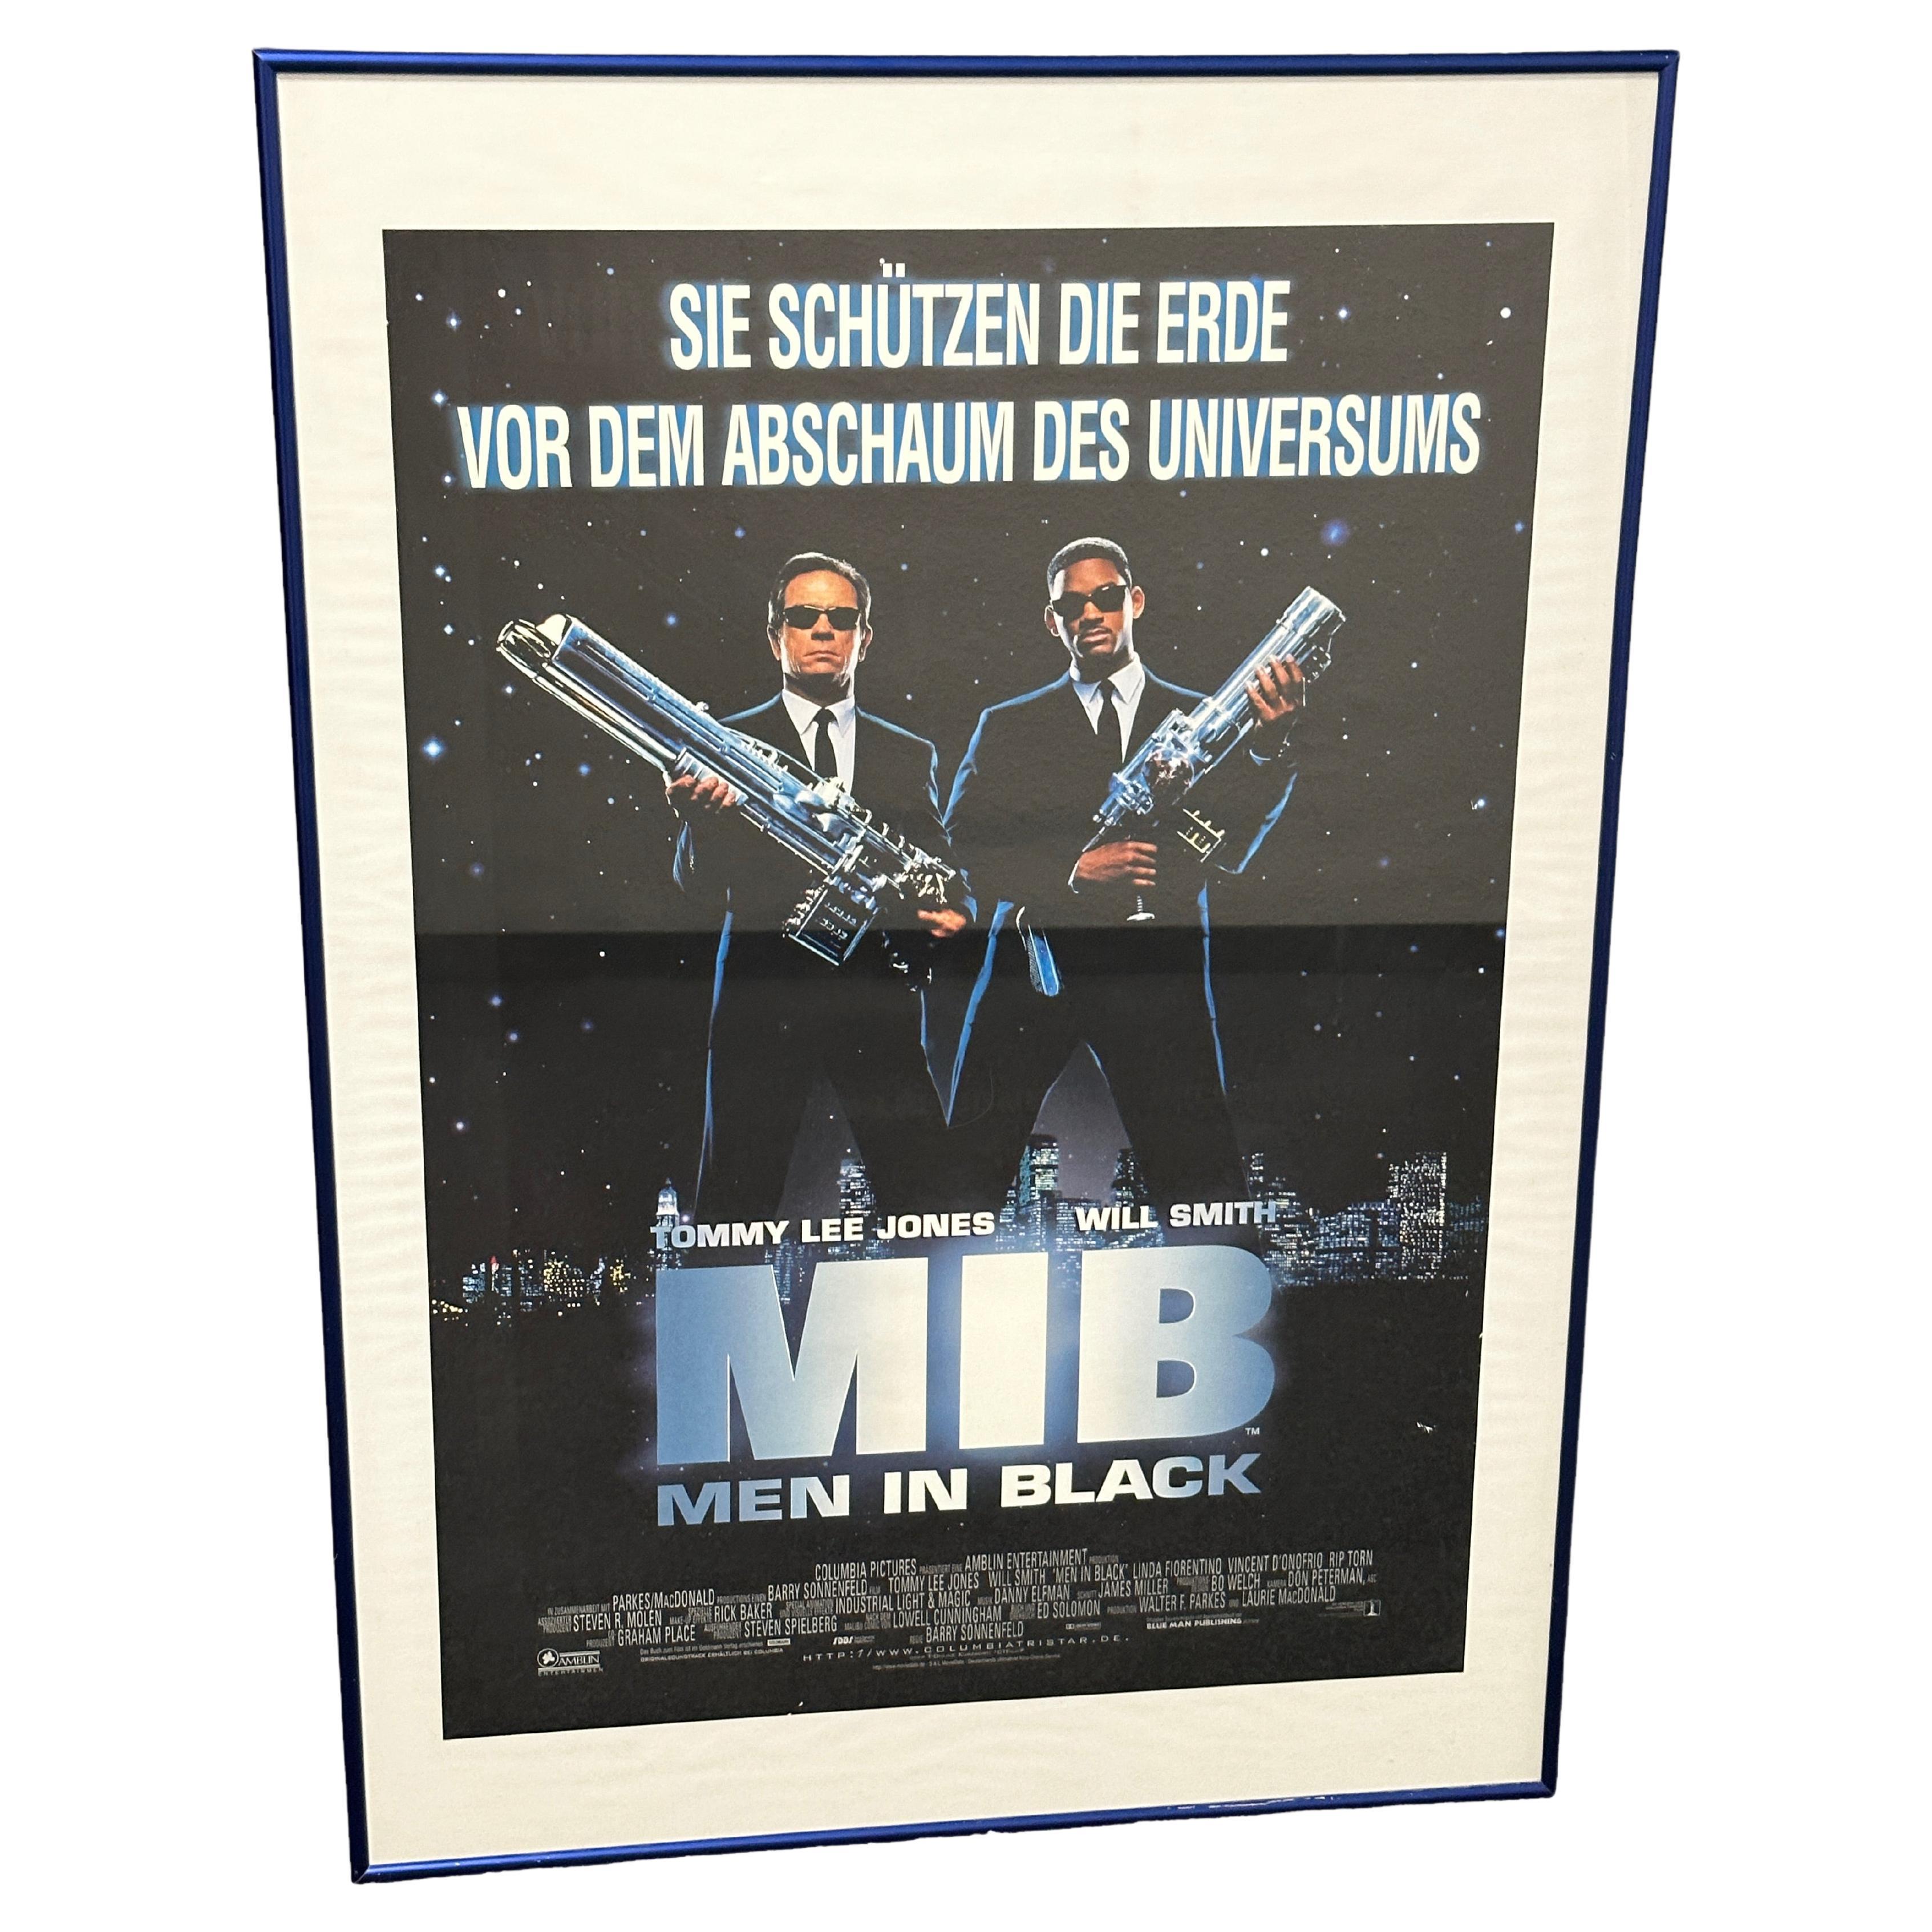 Original Vintage German Movie Poster "Man in Black" MIB, Germany 1997 For Sale